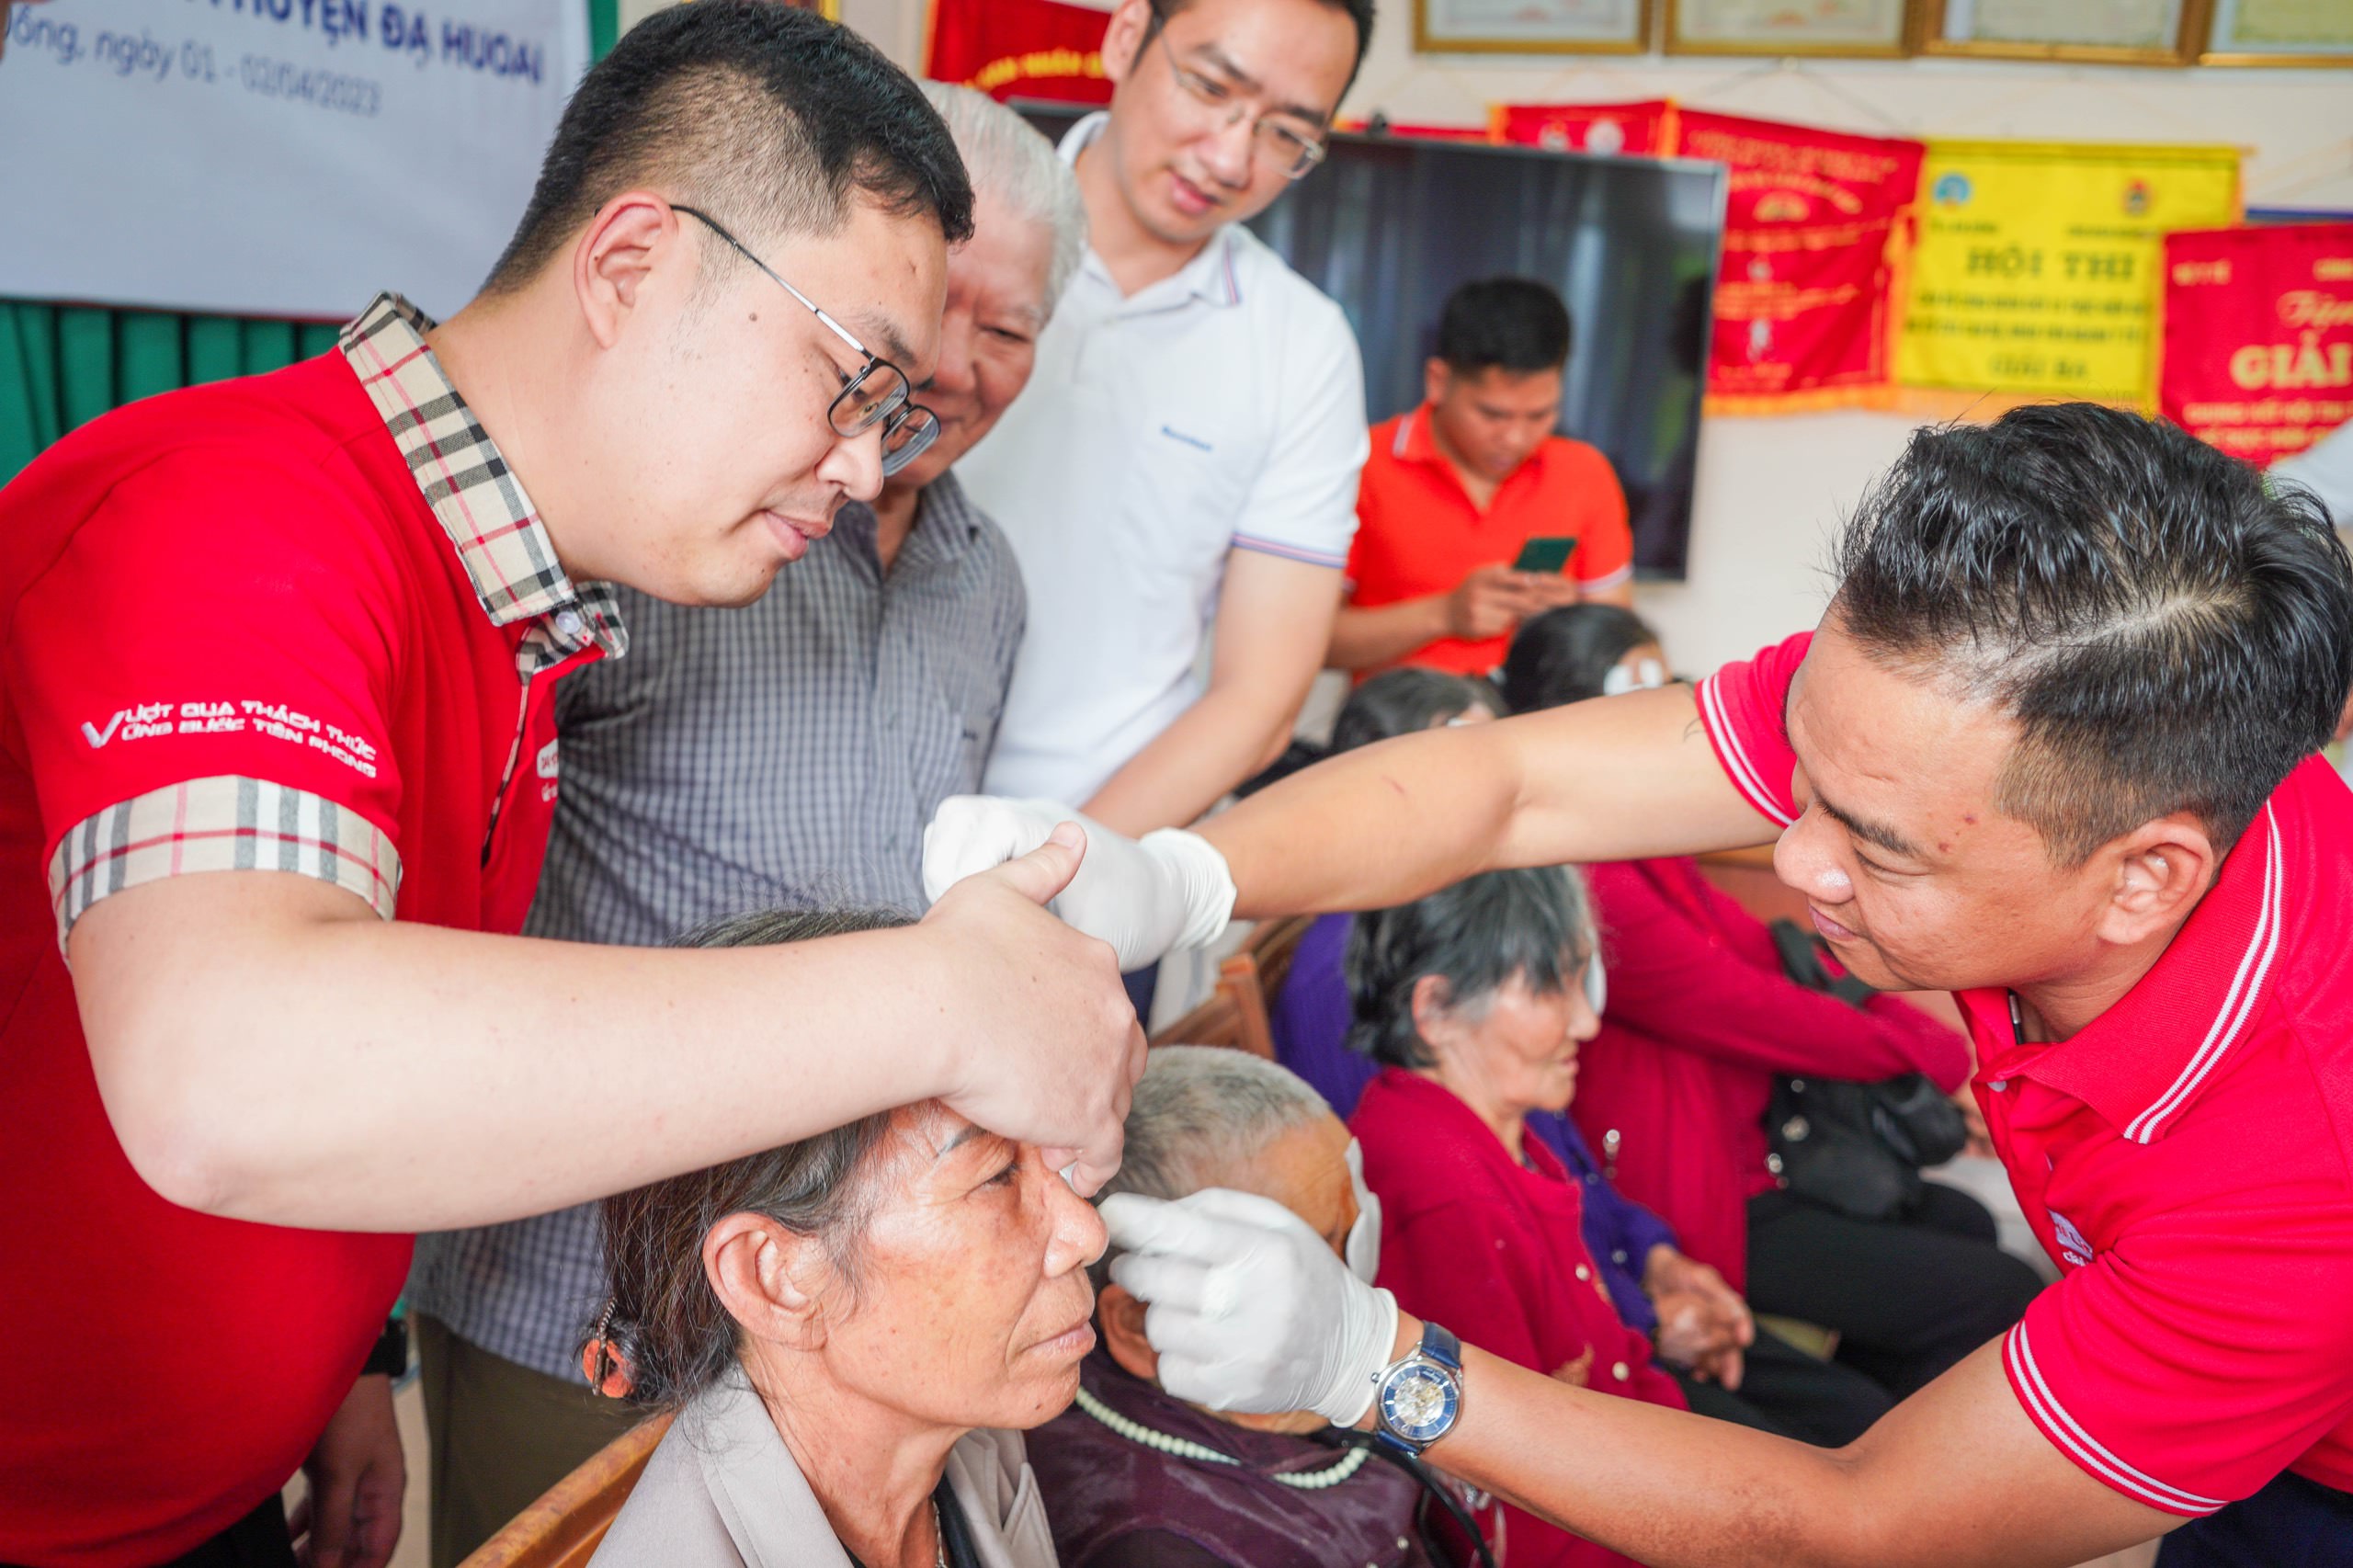 Dai-ichi Life Việt Nam và Sacombank tổ chức chương trình Mổ mắt miễn phí cho bệnh nhân có hoàn cảnh khó khăn tại tỉnh Lâm Đồng...